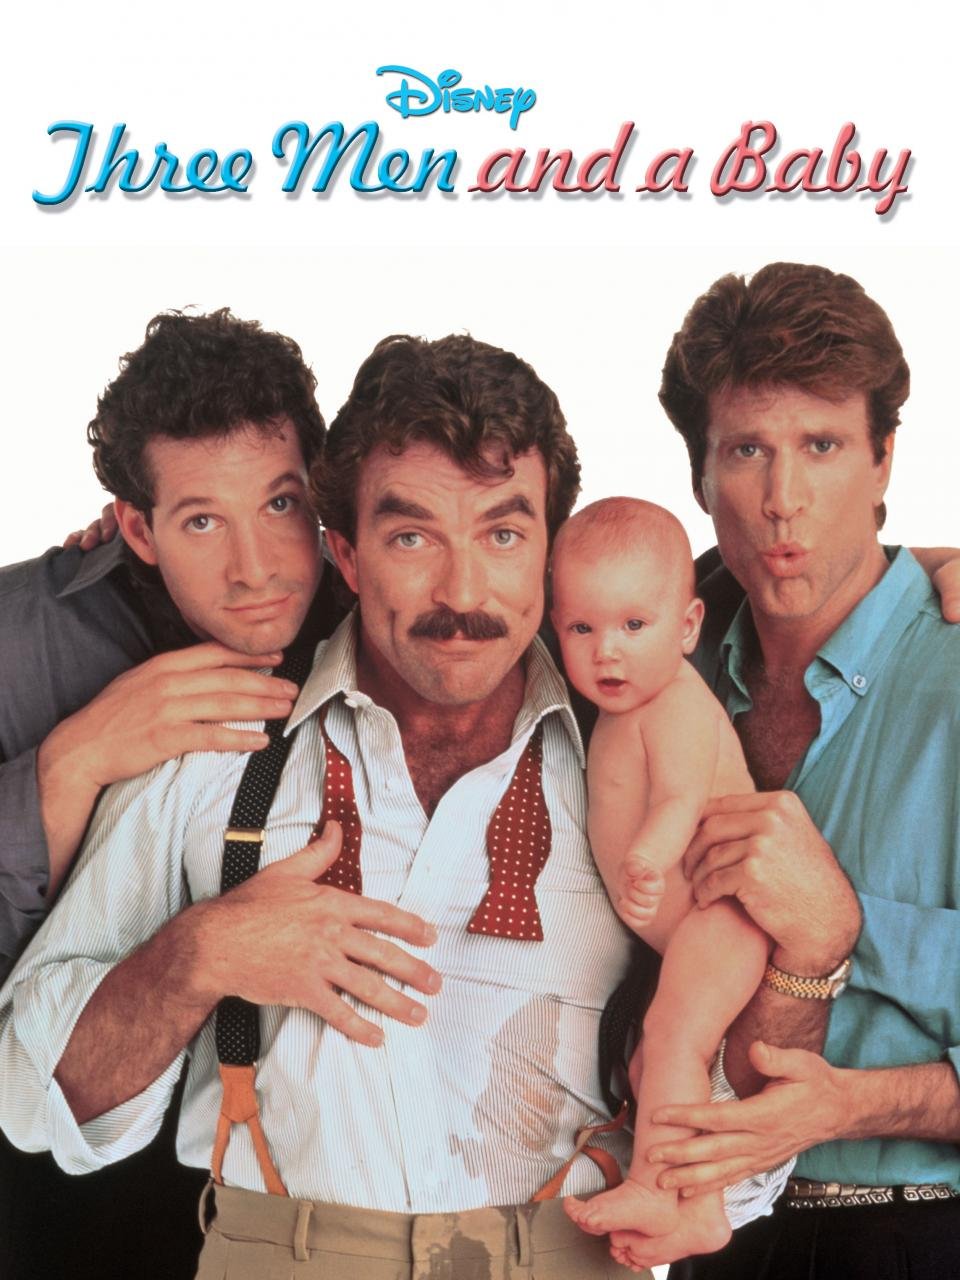 სამი მამაკაცი და ახალშობილი / Three Men and a Baby ქართულად